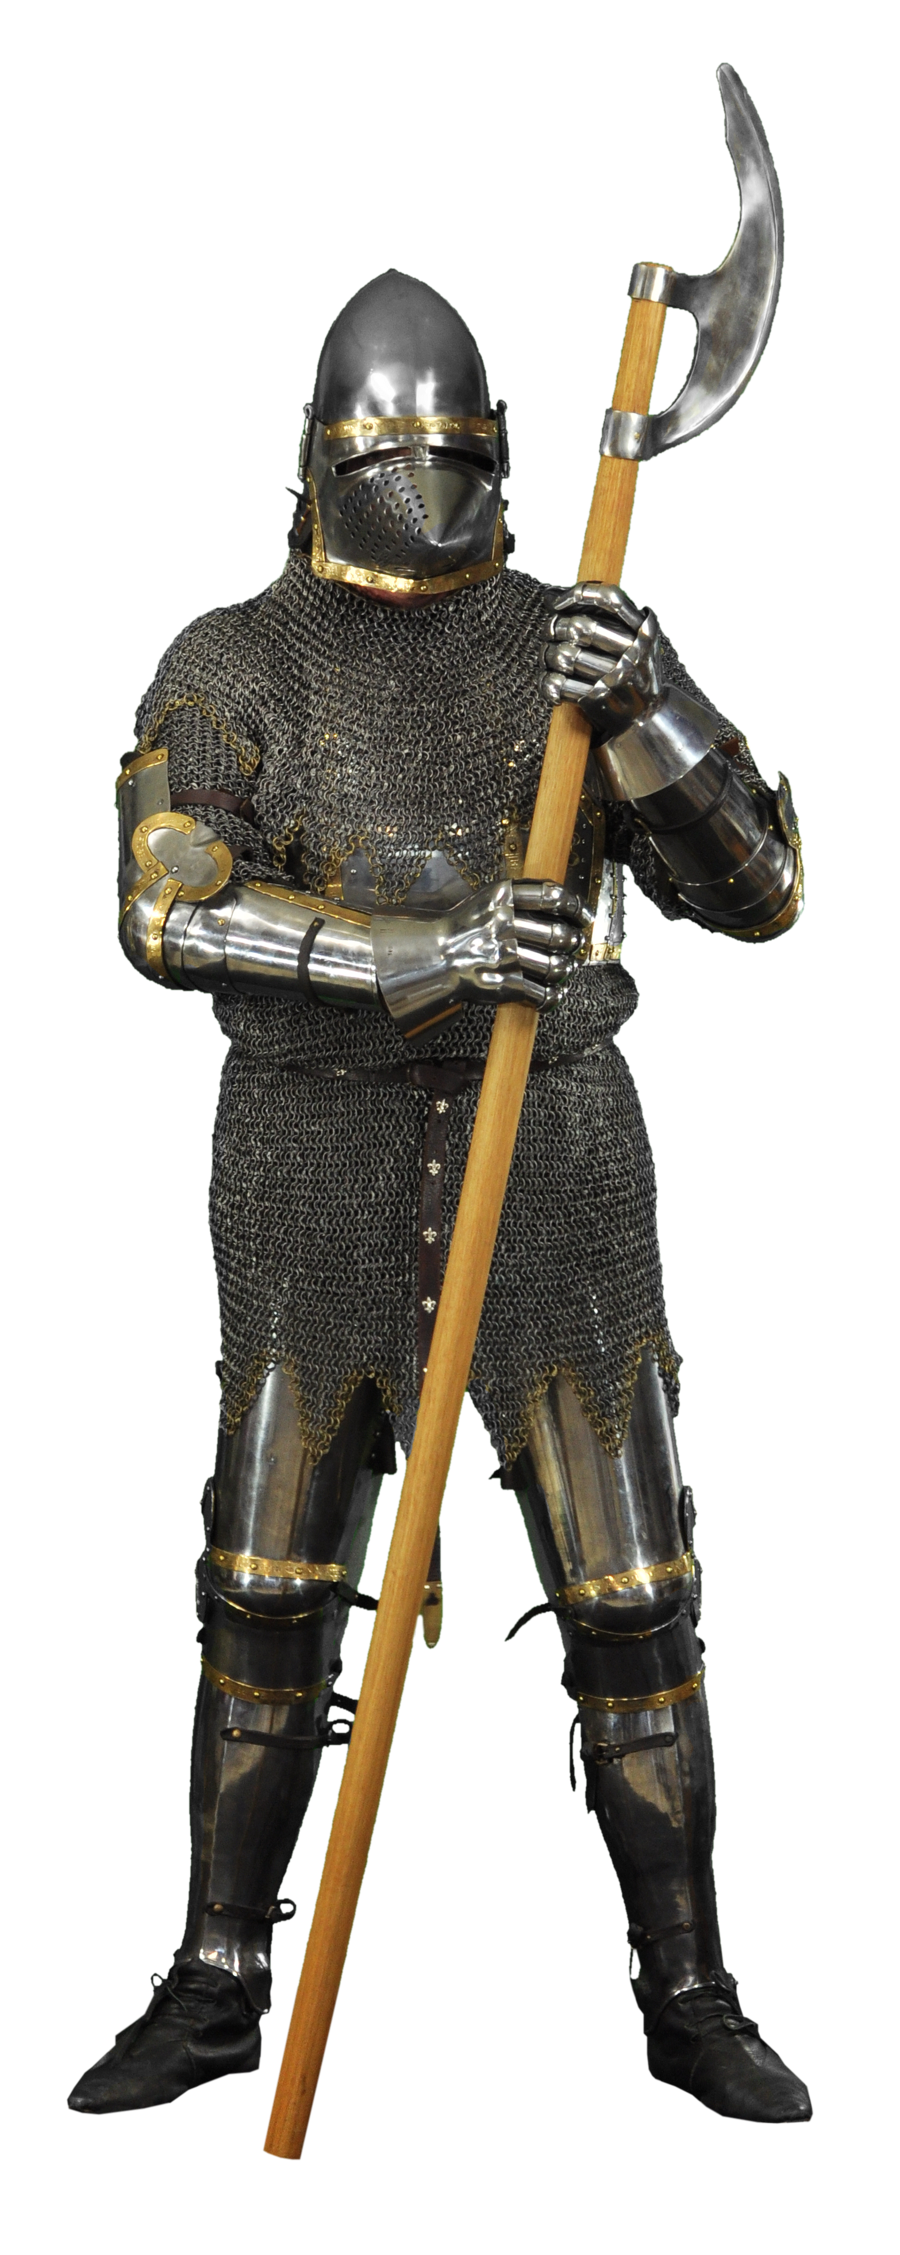 Ortaçağ şövalyesi